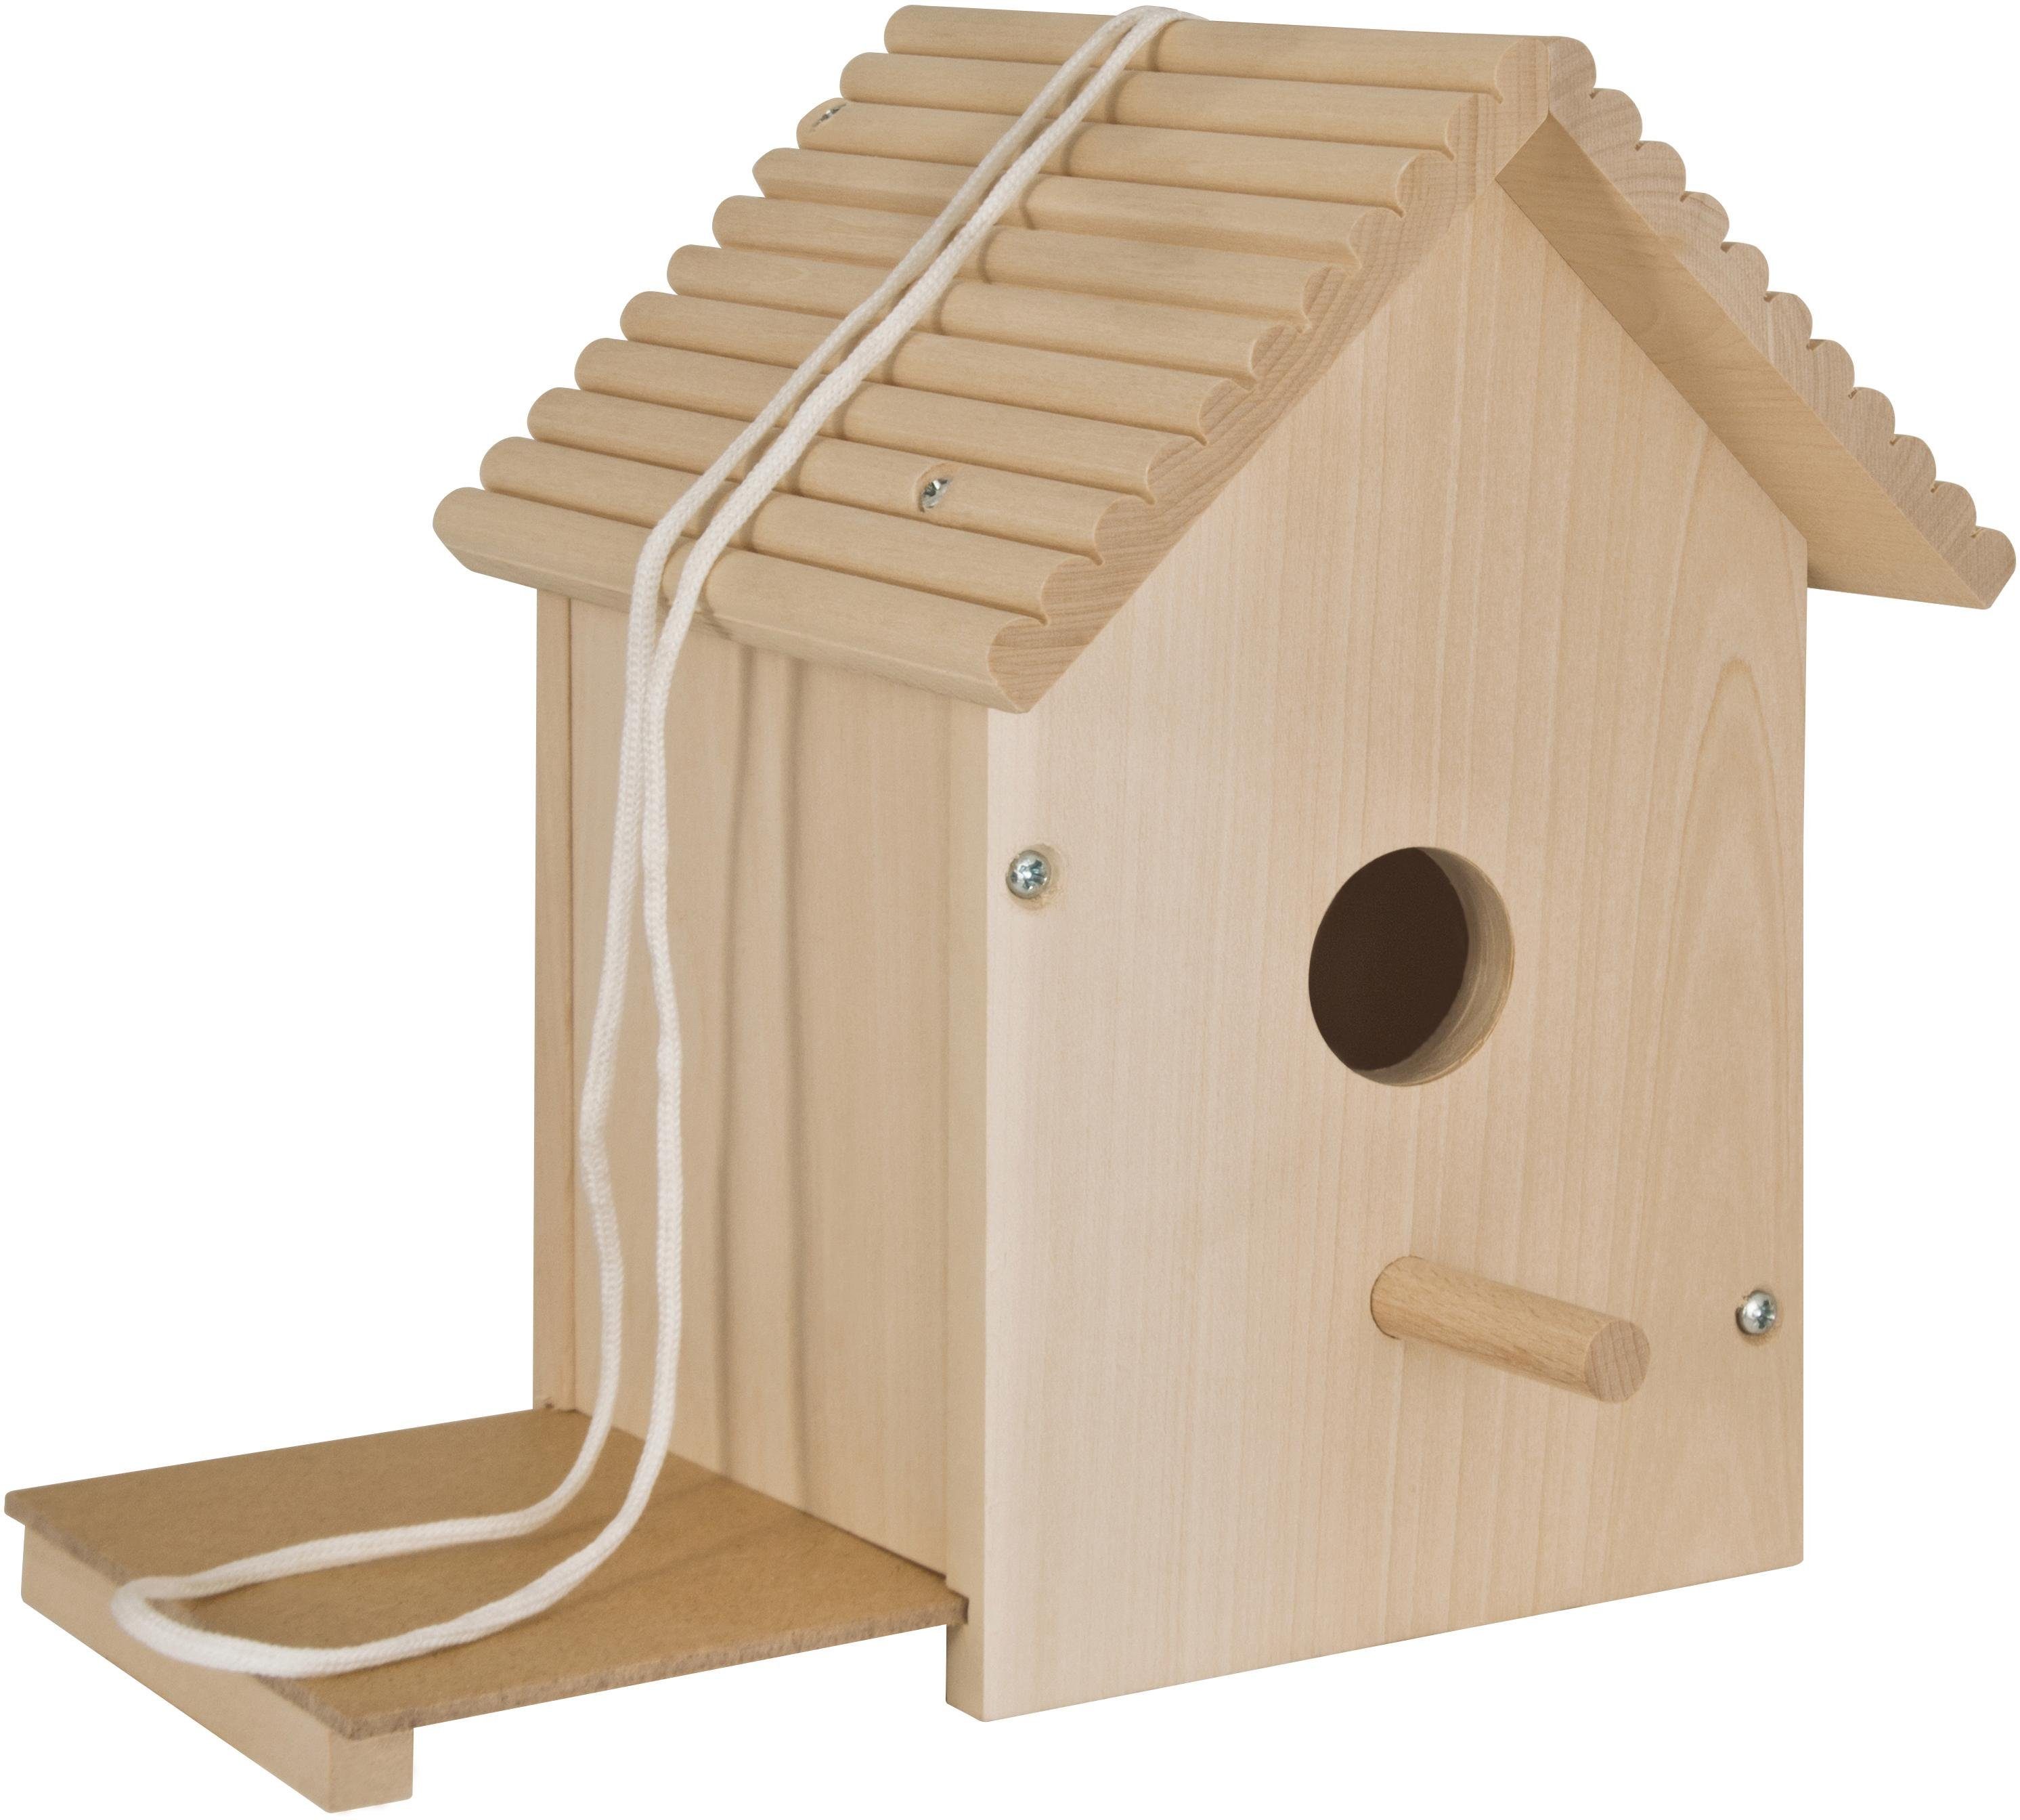 Eichhorn Kreativset Outdoor Zusammenbauen Holzspielzeug, in Europe Vogelhaus, Zum Bemalen; und (Set), Made